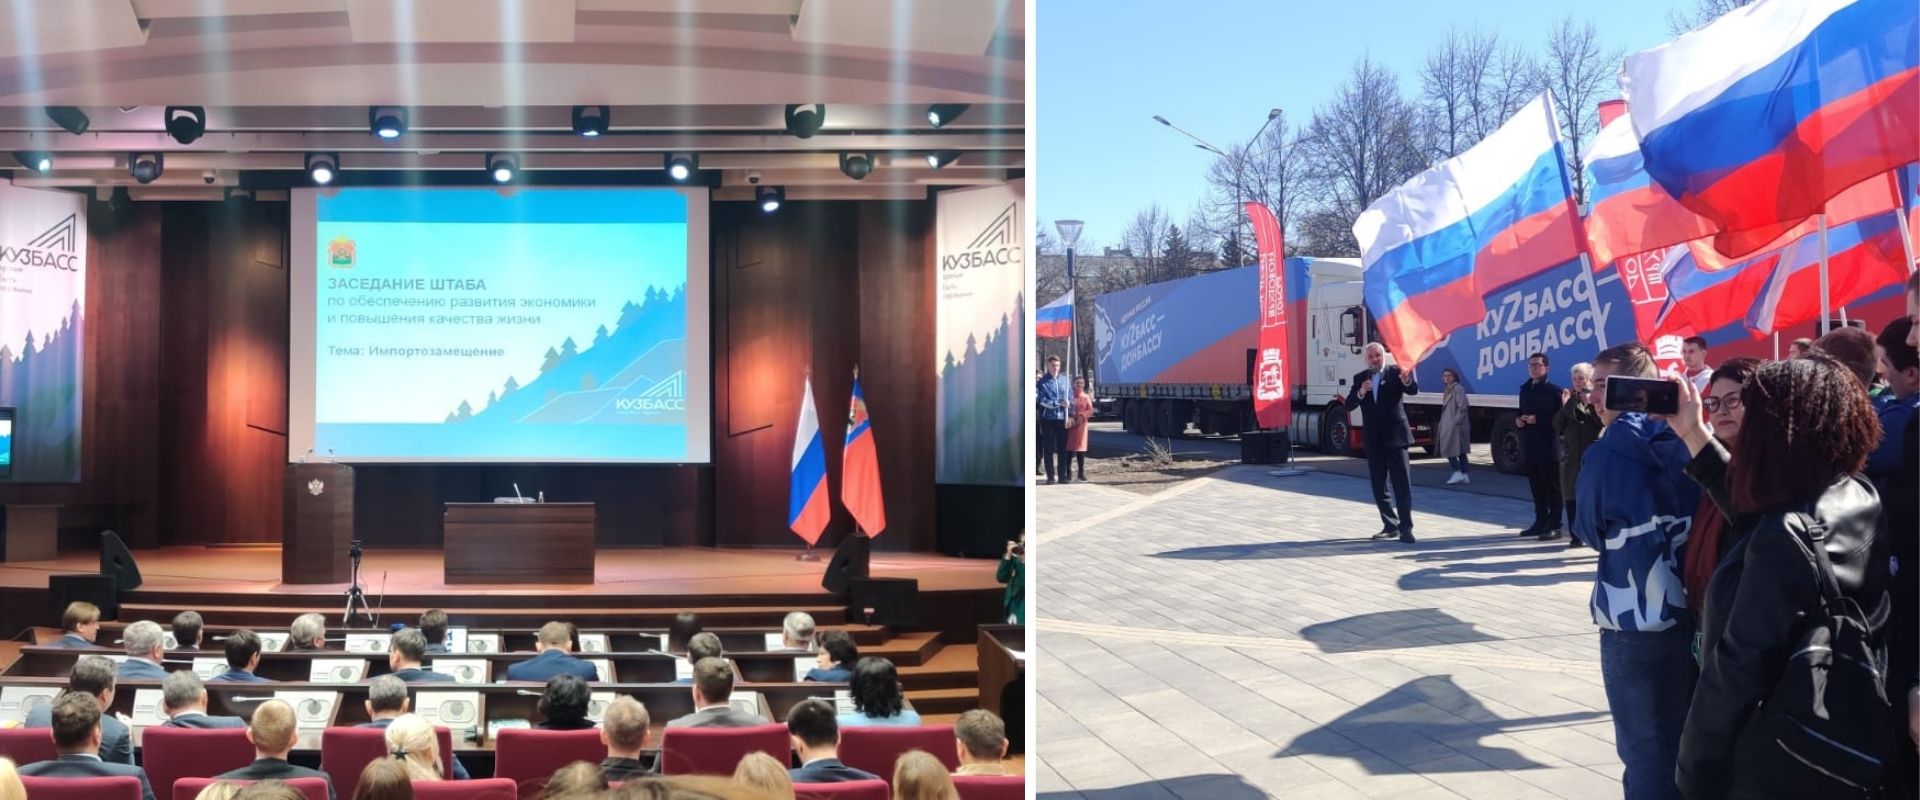 7 апреля состоялось рабочее совещание с Губернатором Кемеровской области – Кузбасса по вопросам обеспечения развития экономики и повышения качества жизни